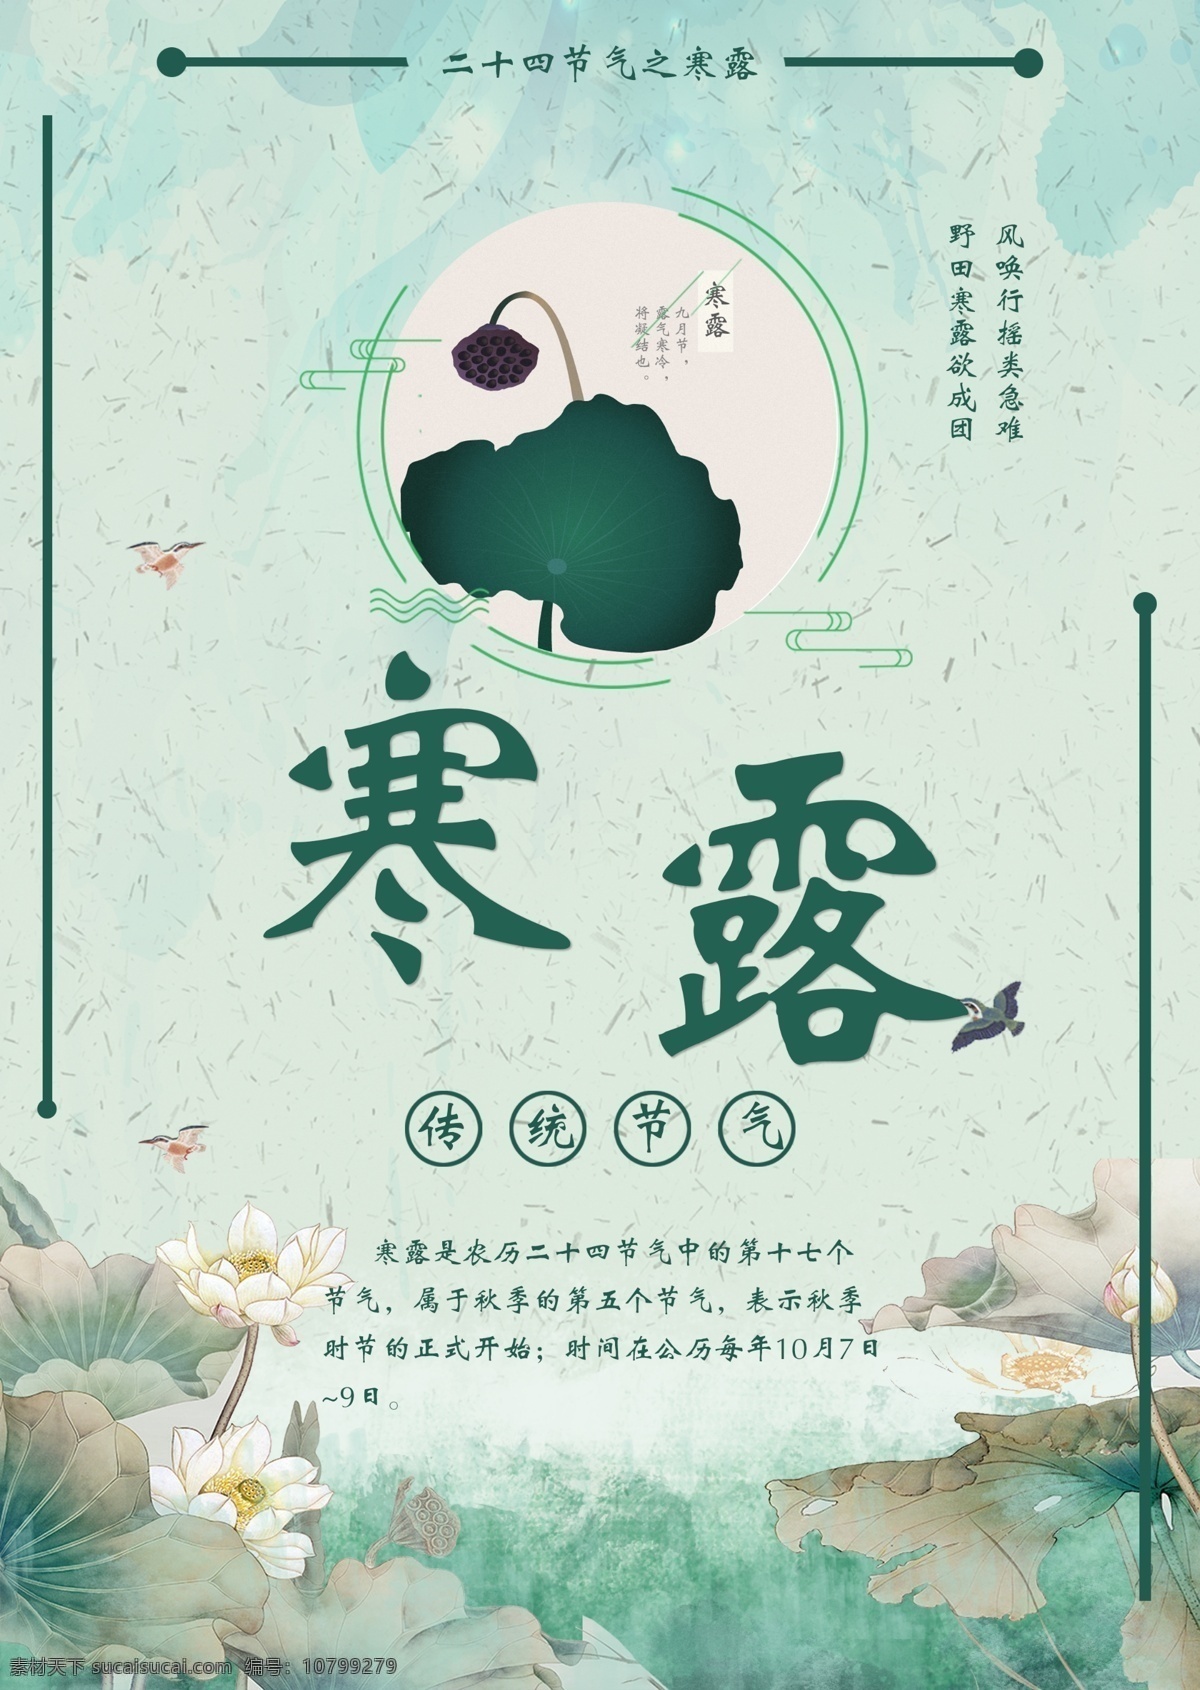 清新 简洁 文艺 二十四节气 寒露 荷花 中国风 节日 创意 海报 青色 寒露海报 白露 传统节气